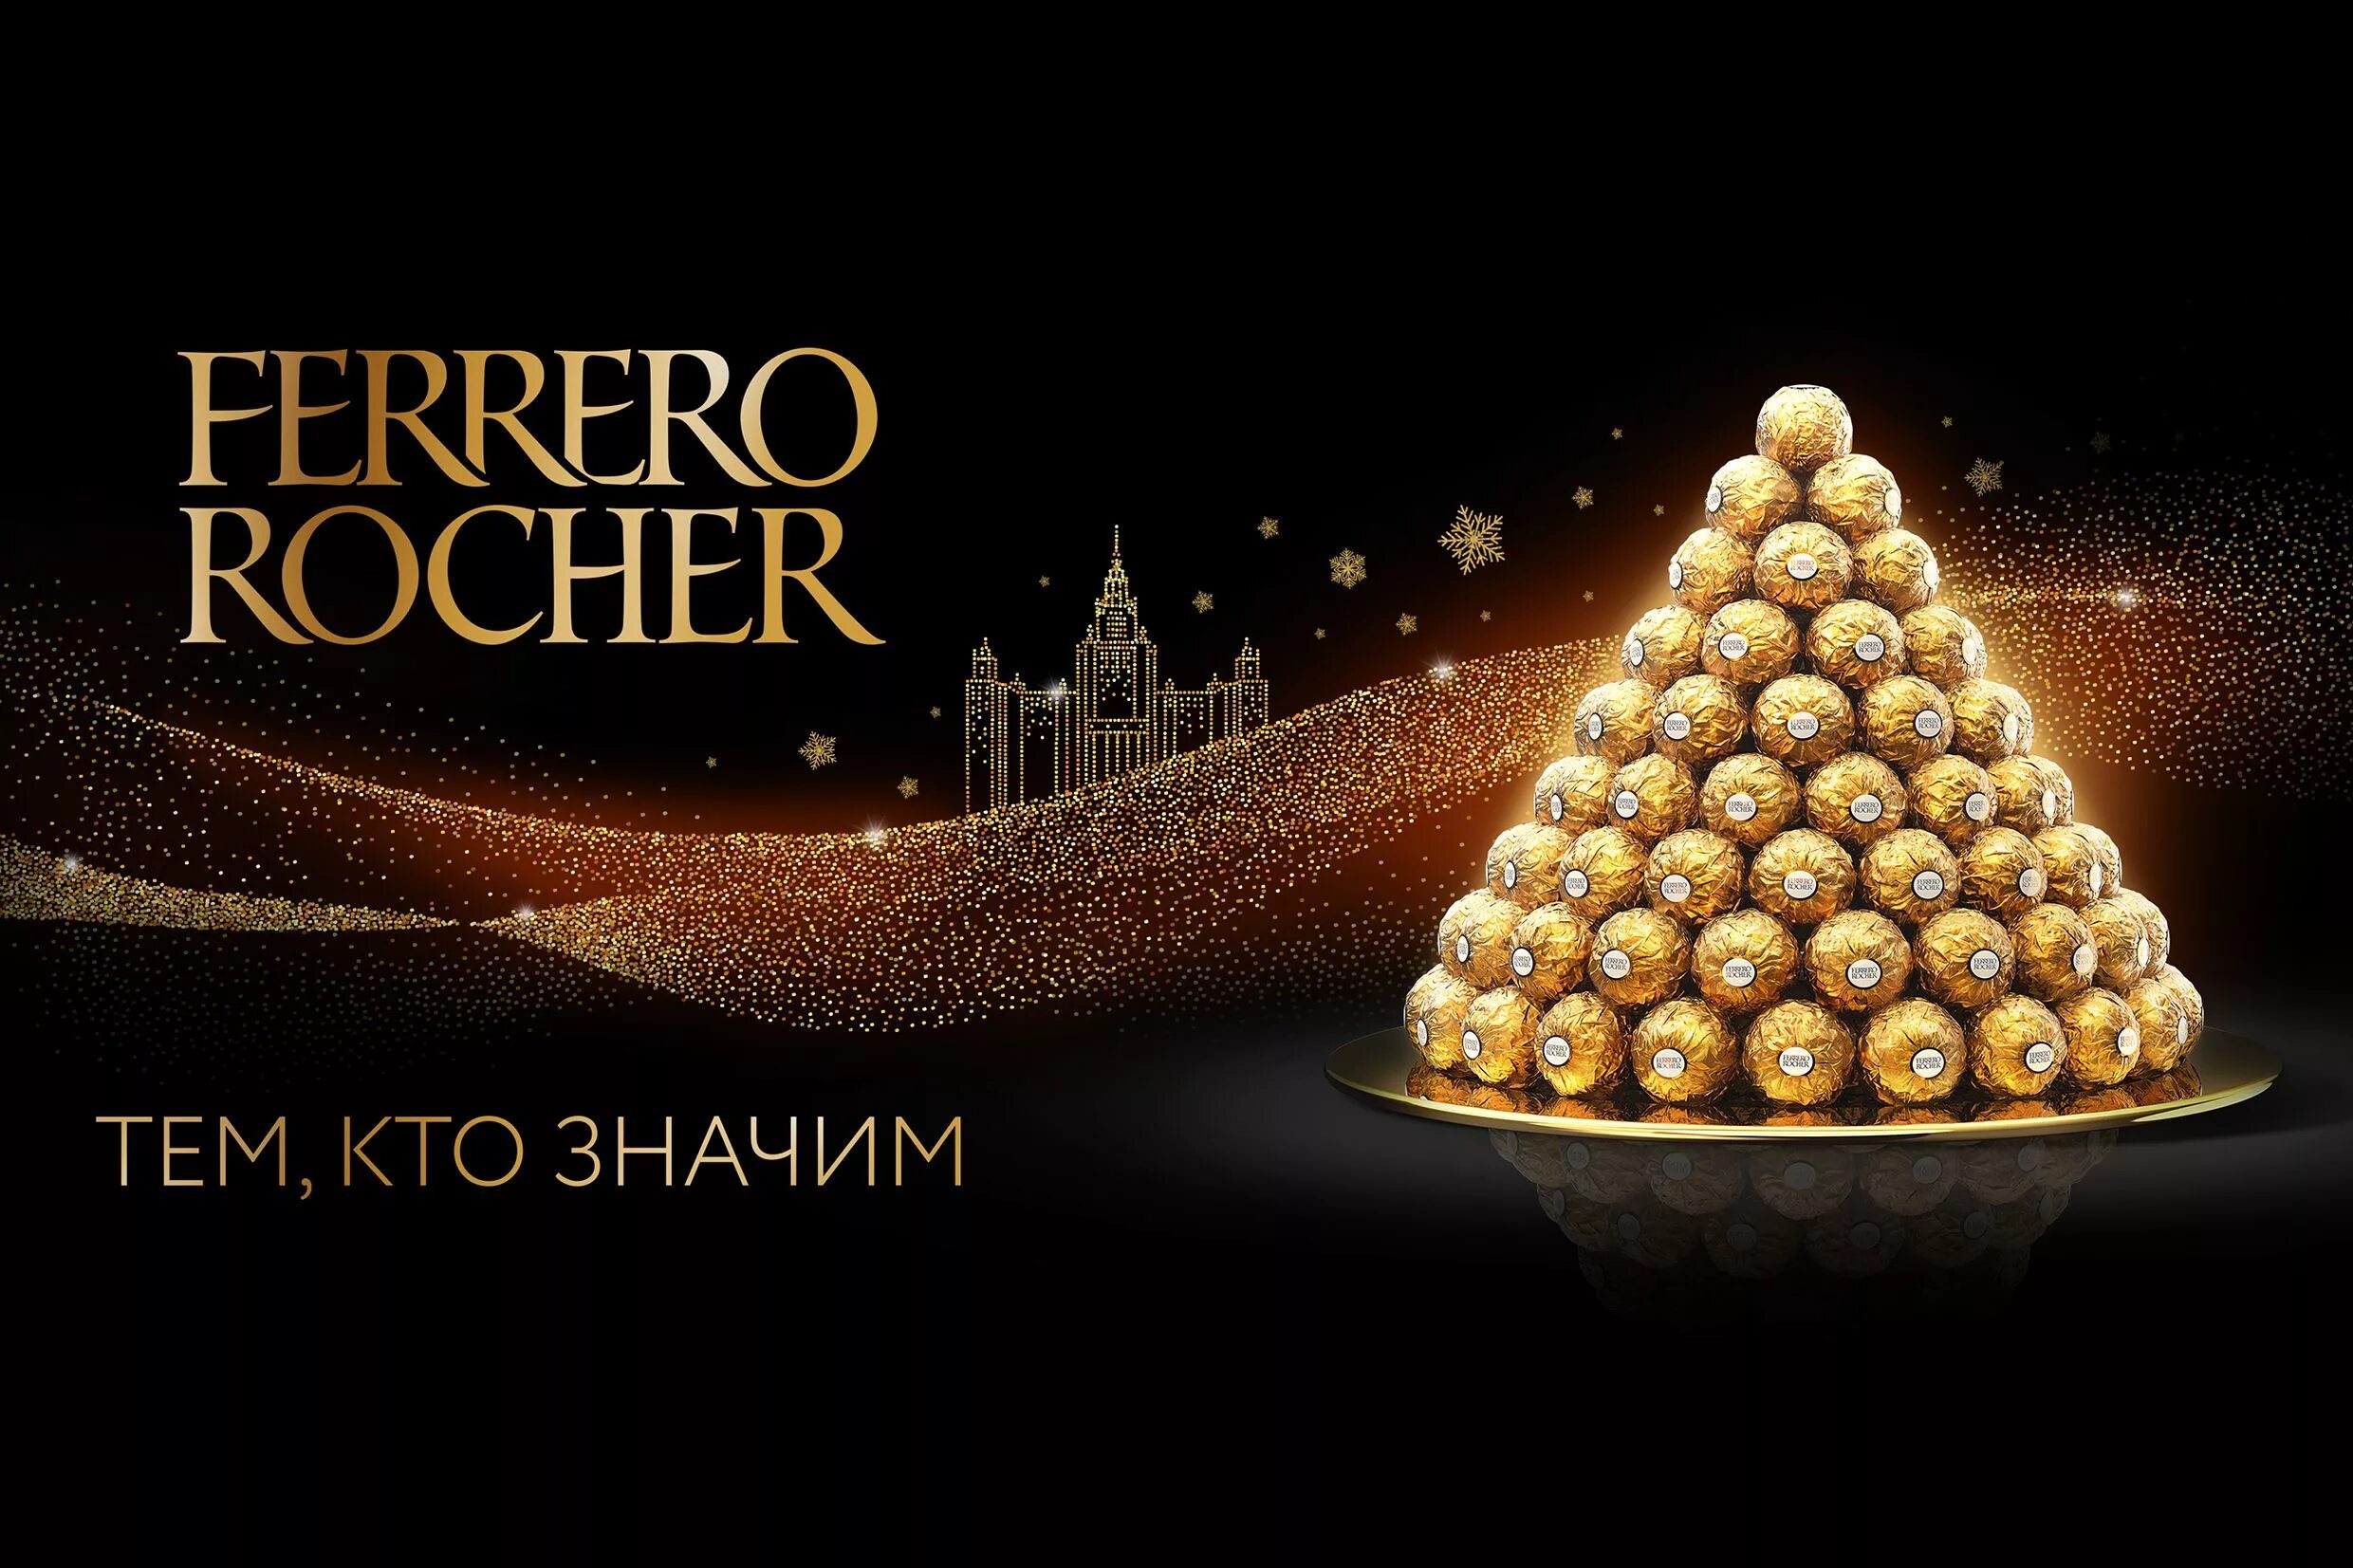 Реклама ферреро роше. Ferrero Rocher конфеты реклама. Ферреро Роше продукция. Реклама конфет Ферреро Роше. Ferrero Rocher производитель.